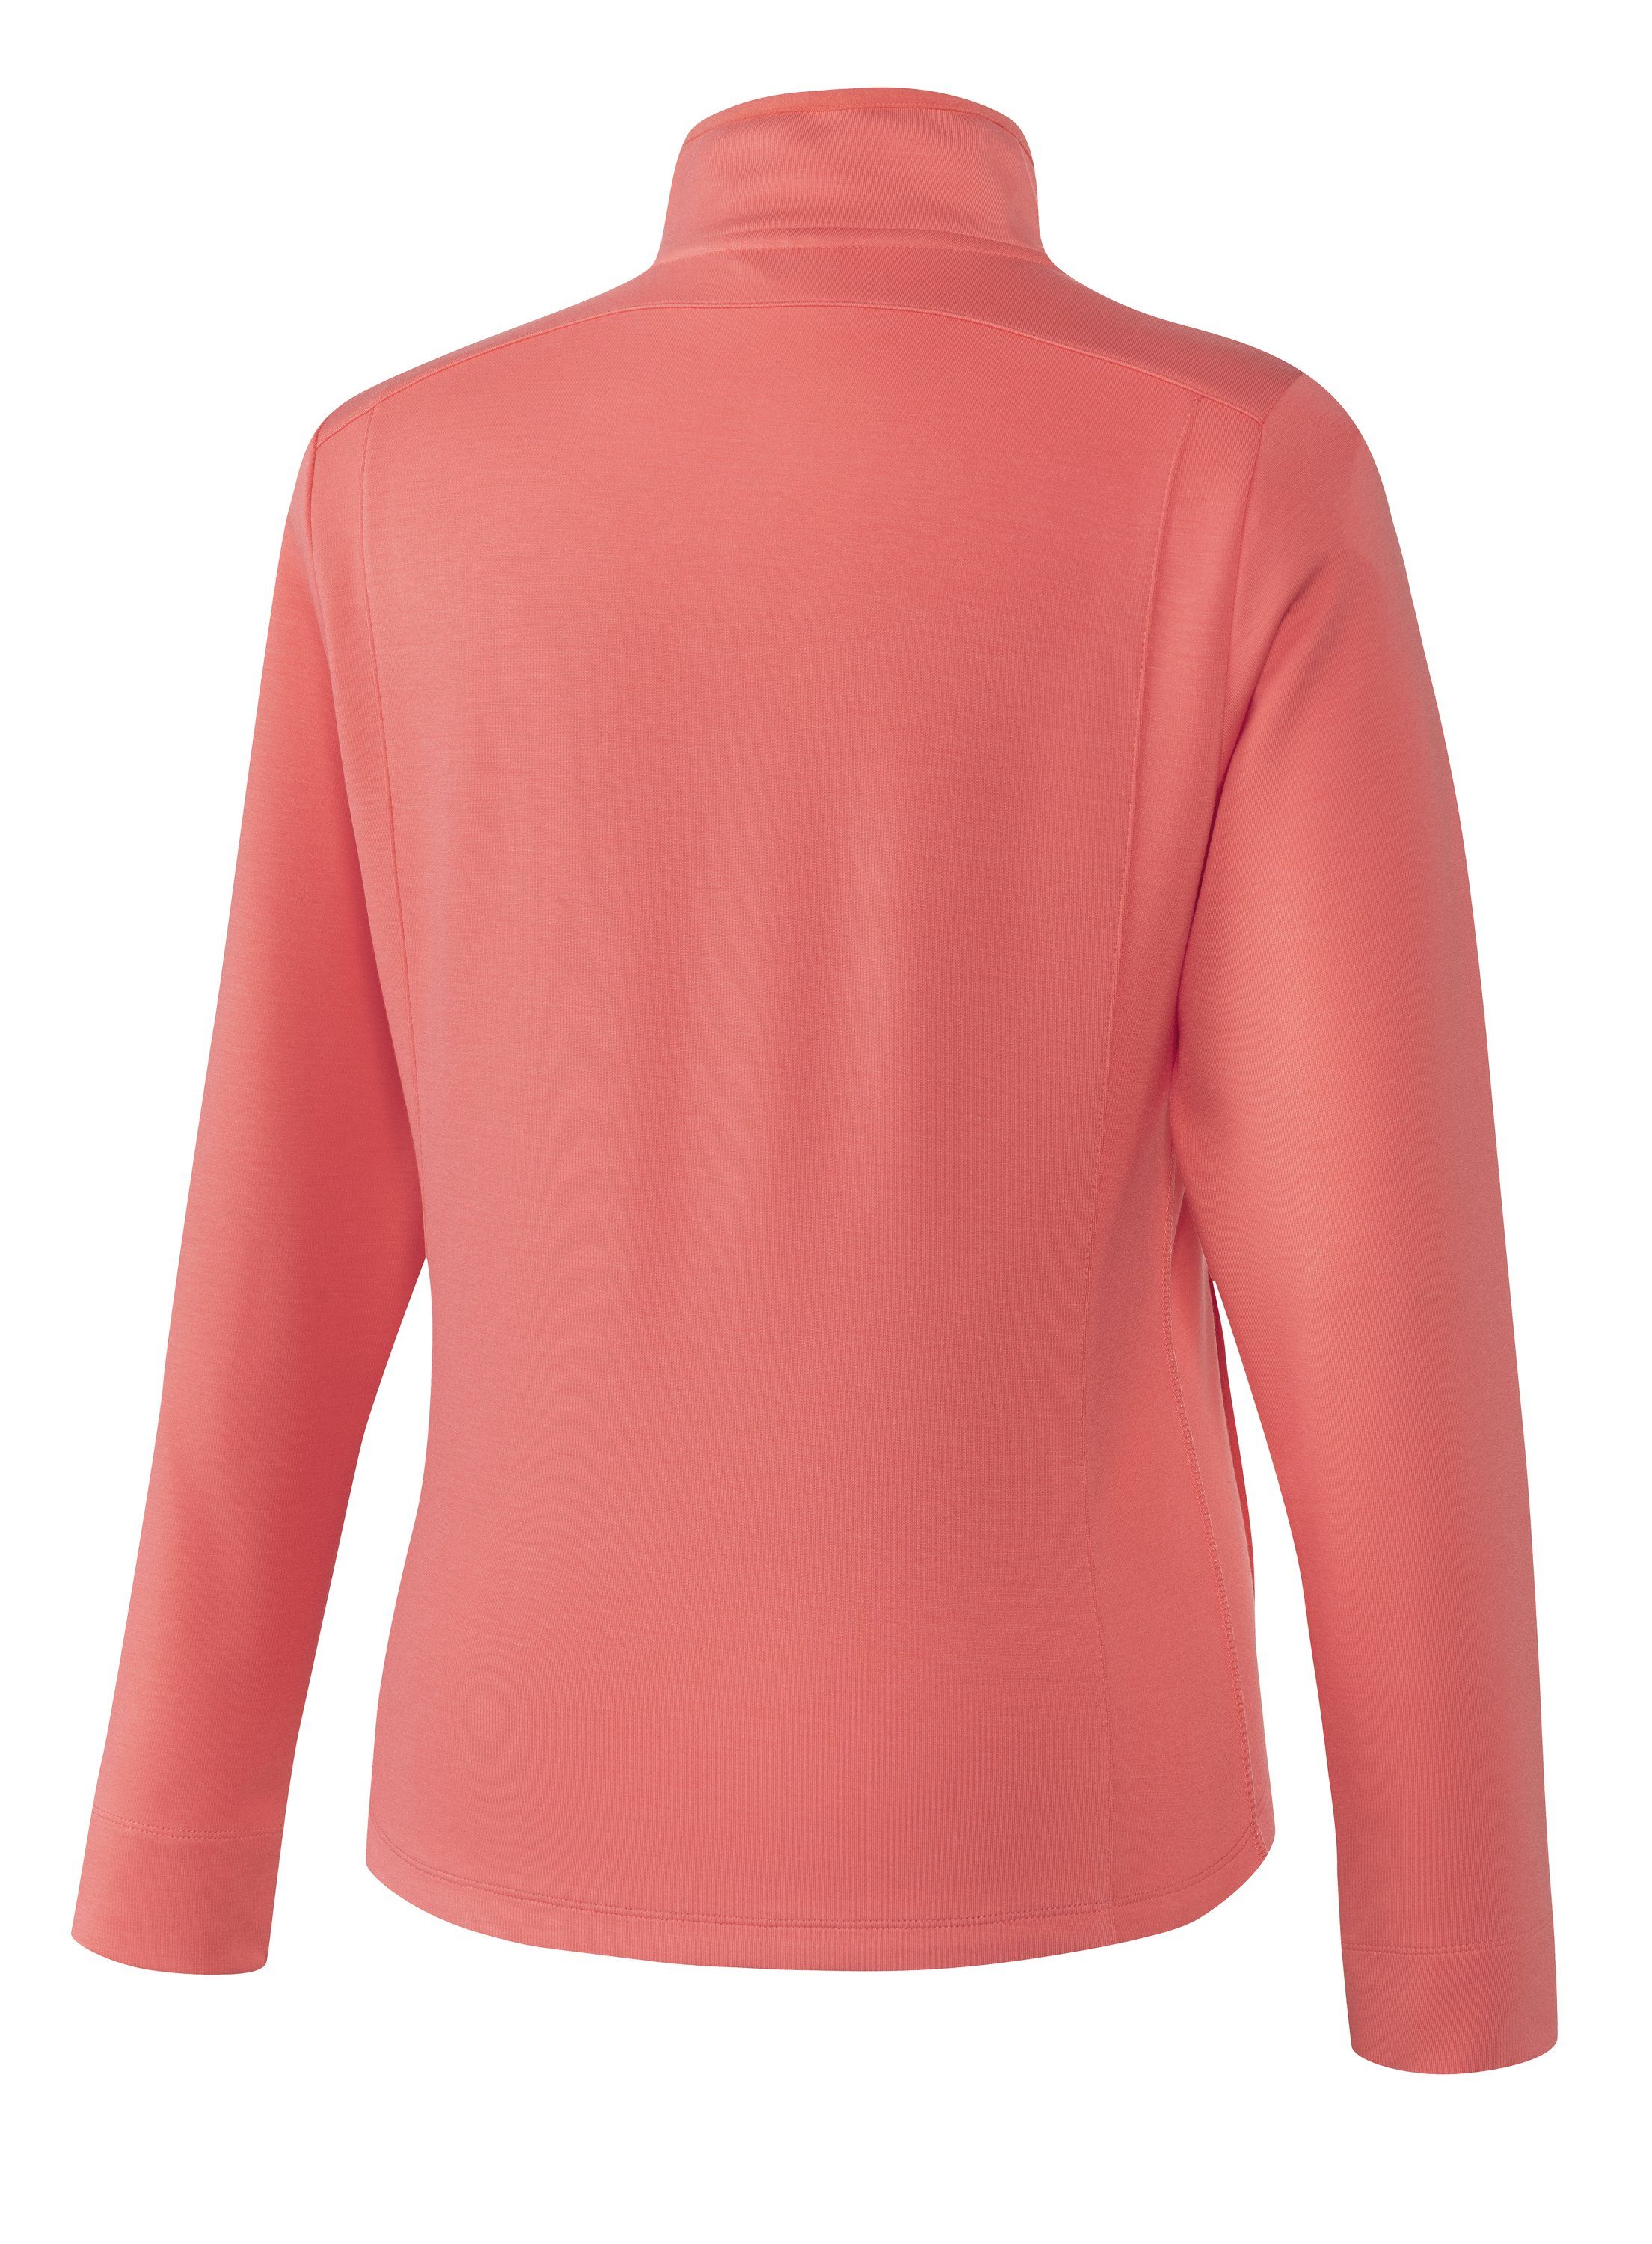 Joy Sportswear Jacke Trainingsjacke coral pink MALA